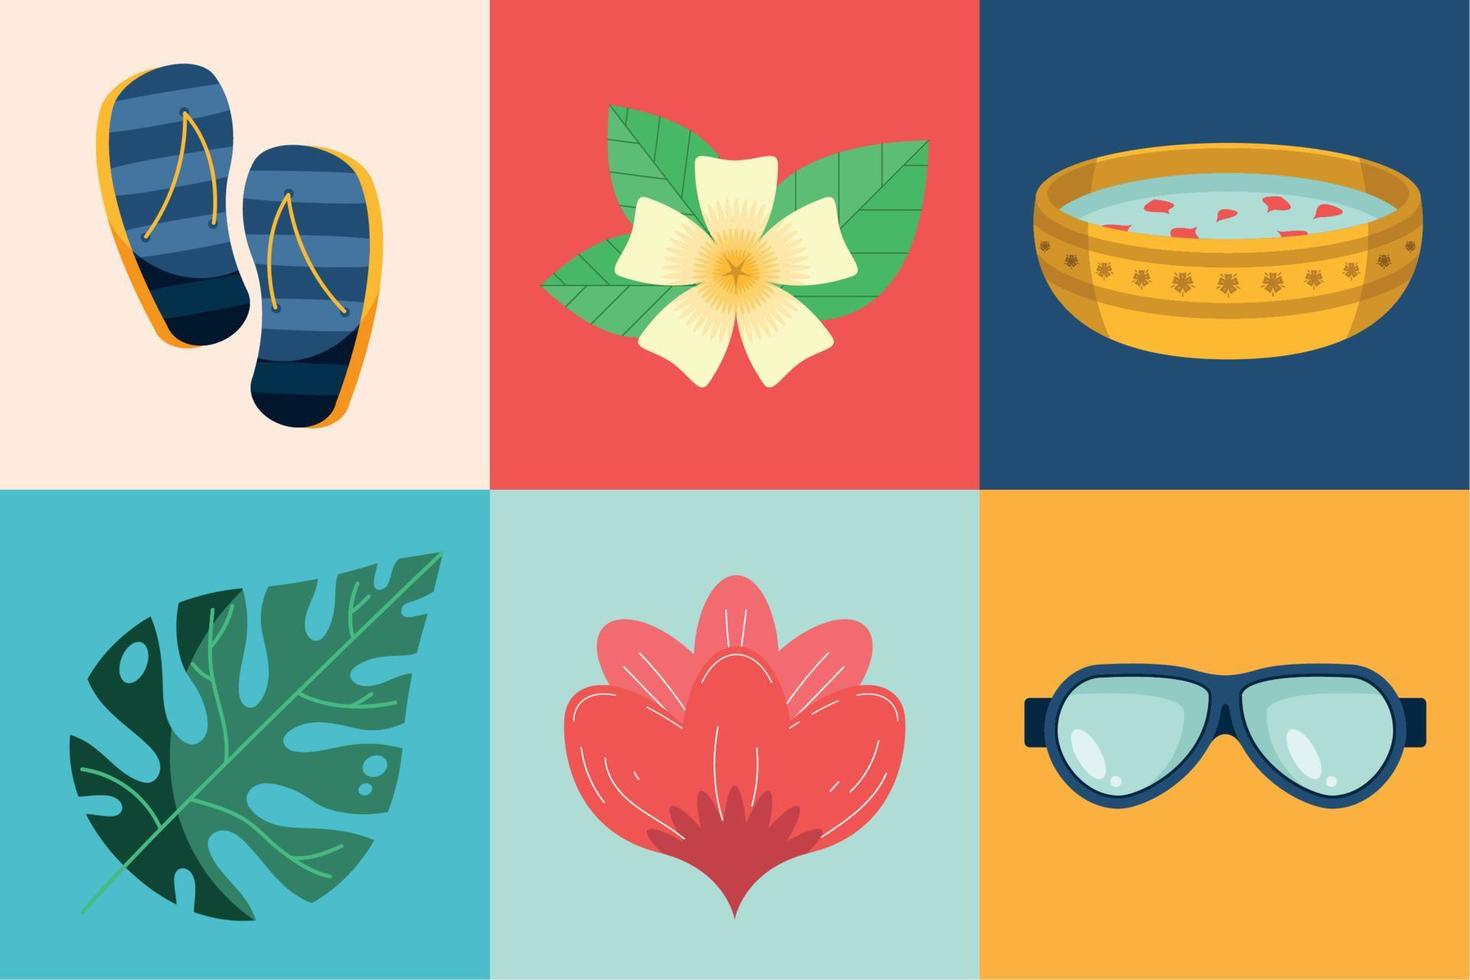 six songkran festival icons vector